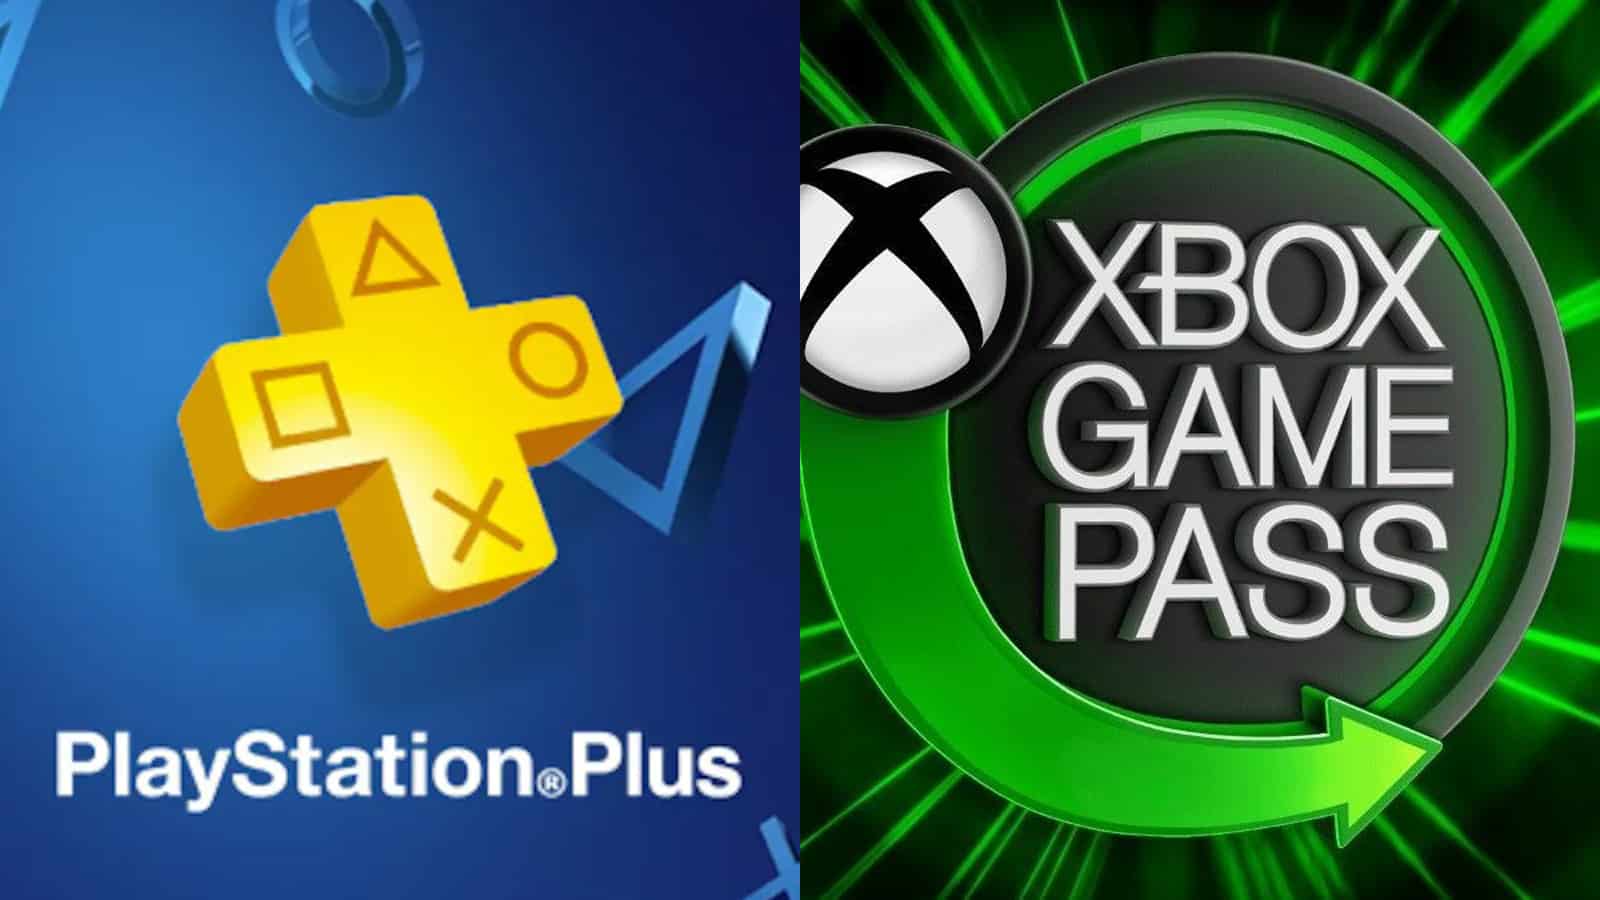 Xbox Game Pass ou PS Plus? Como escolher